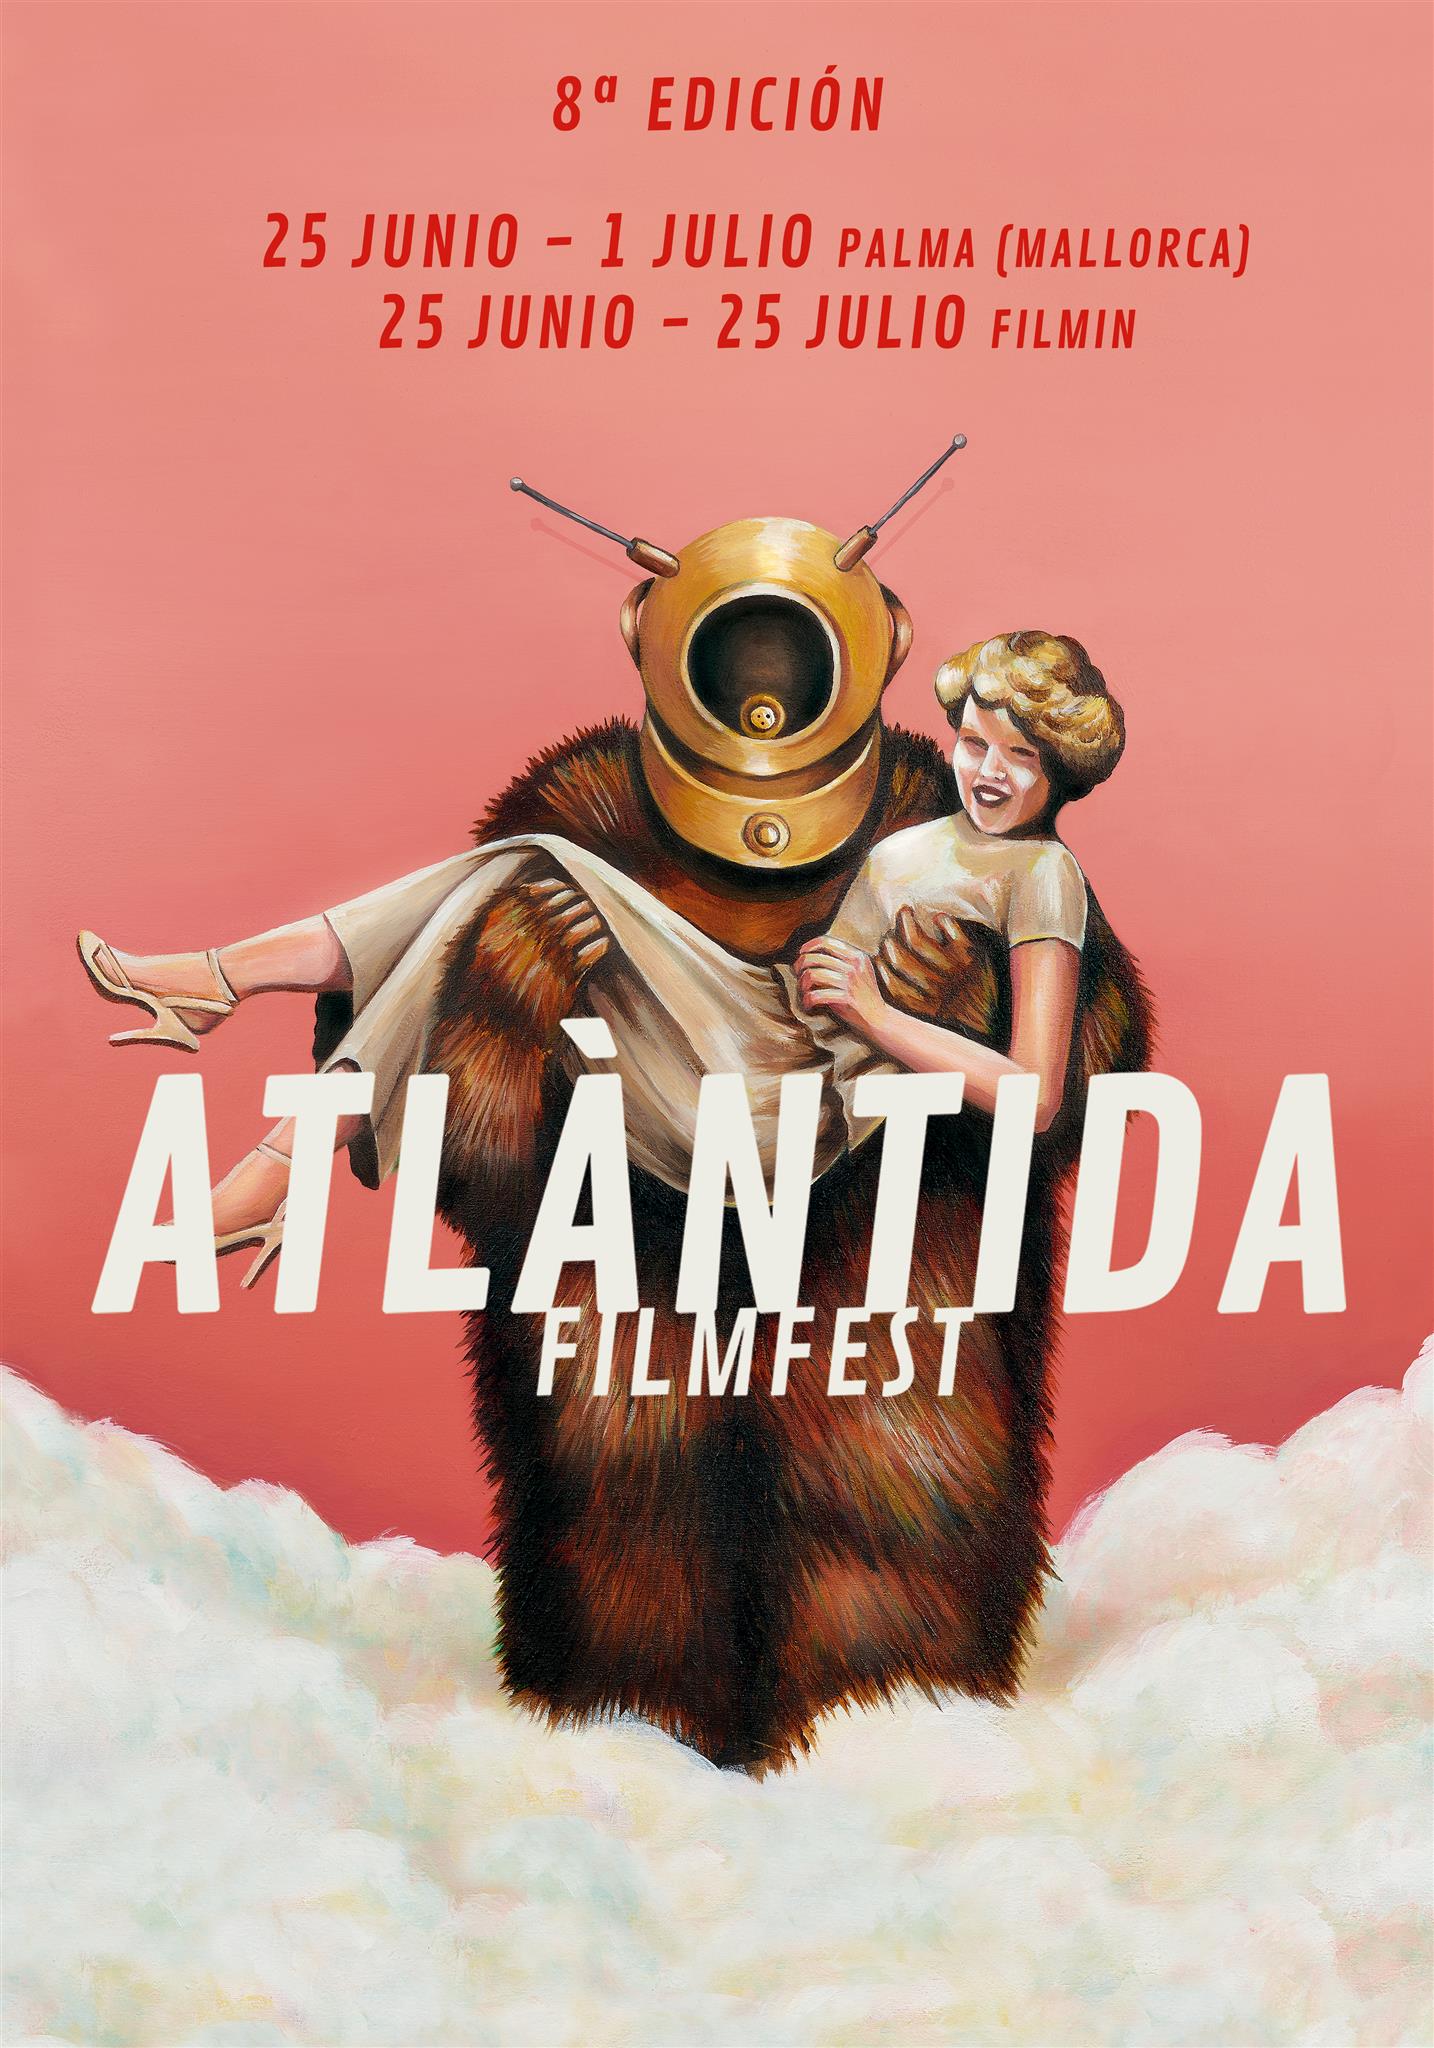 Descubre el Atlàntida Film Fest en su octava edición